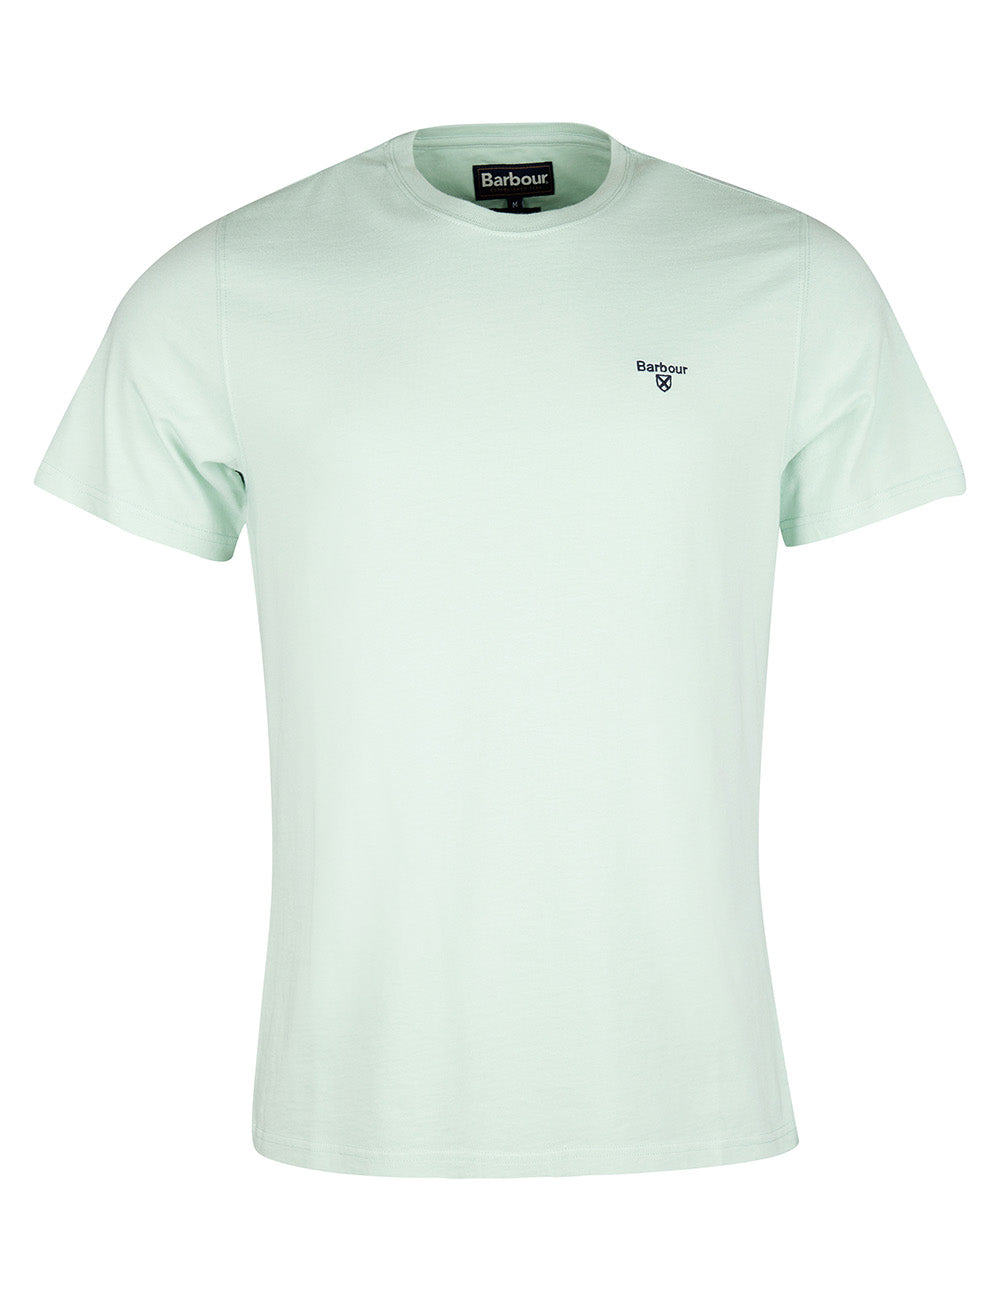 Barbour Sports T-Shirt - Dusty Mint